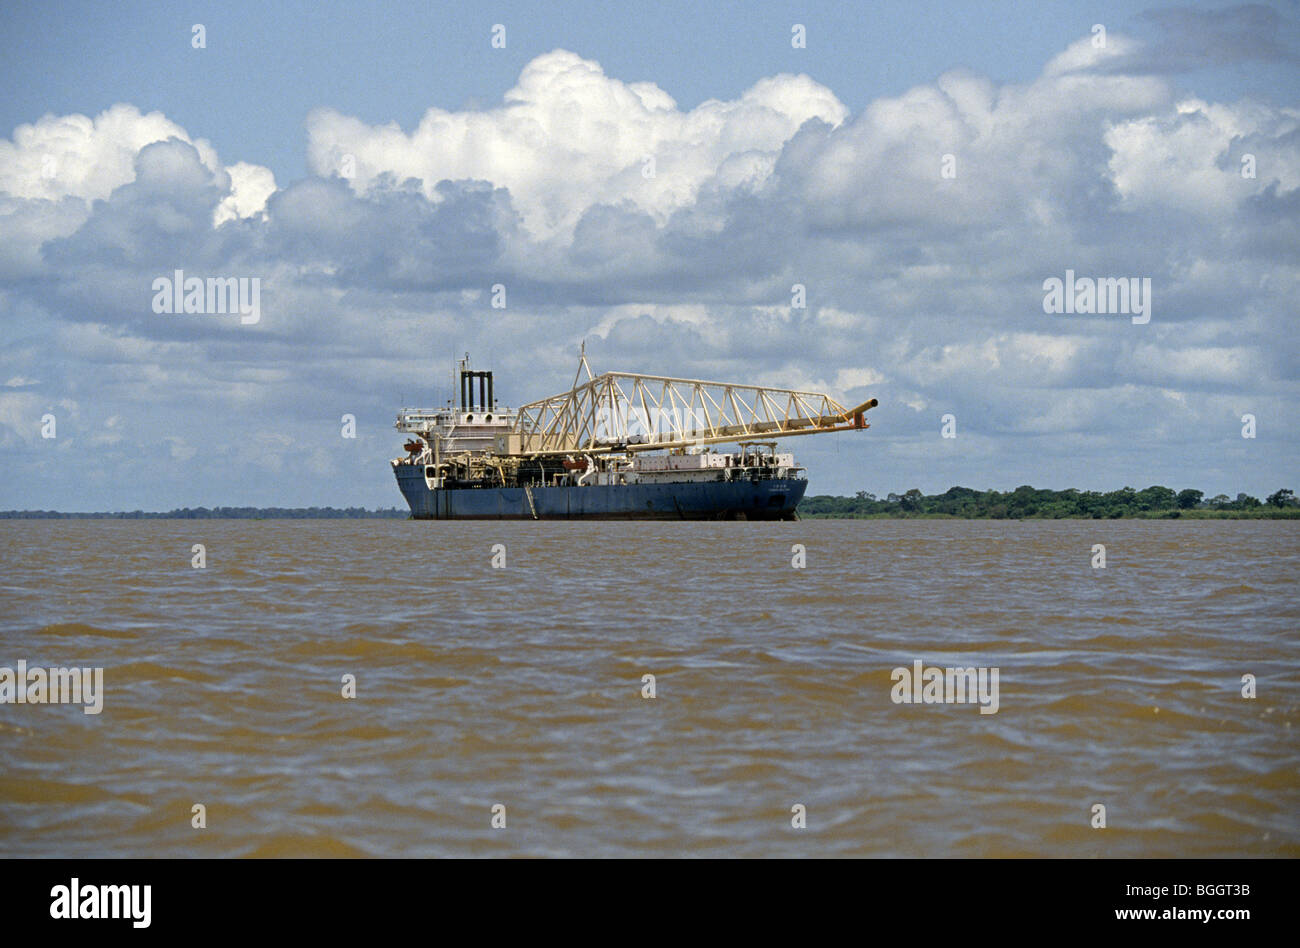 The Cuidad Bolivar, A small replenishment oiler ship in the channel of the Orinoco River in Venezuela Stock Photo